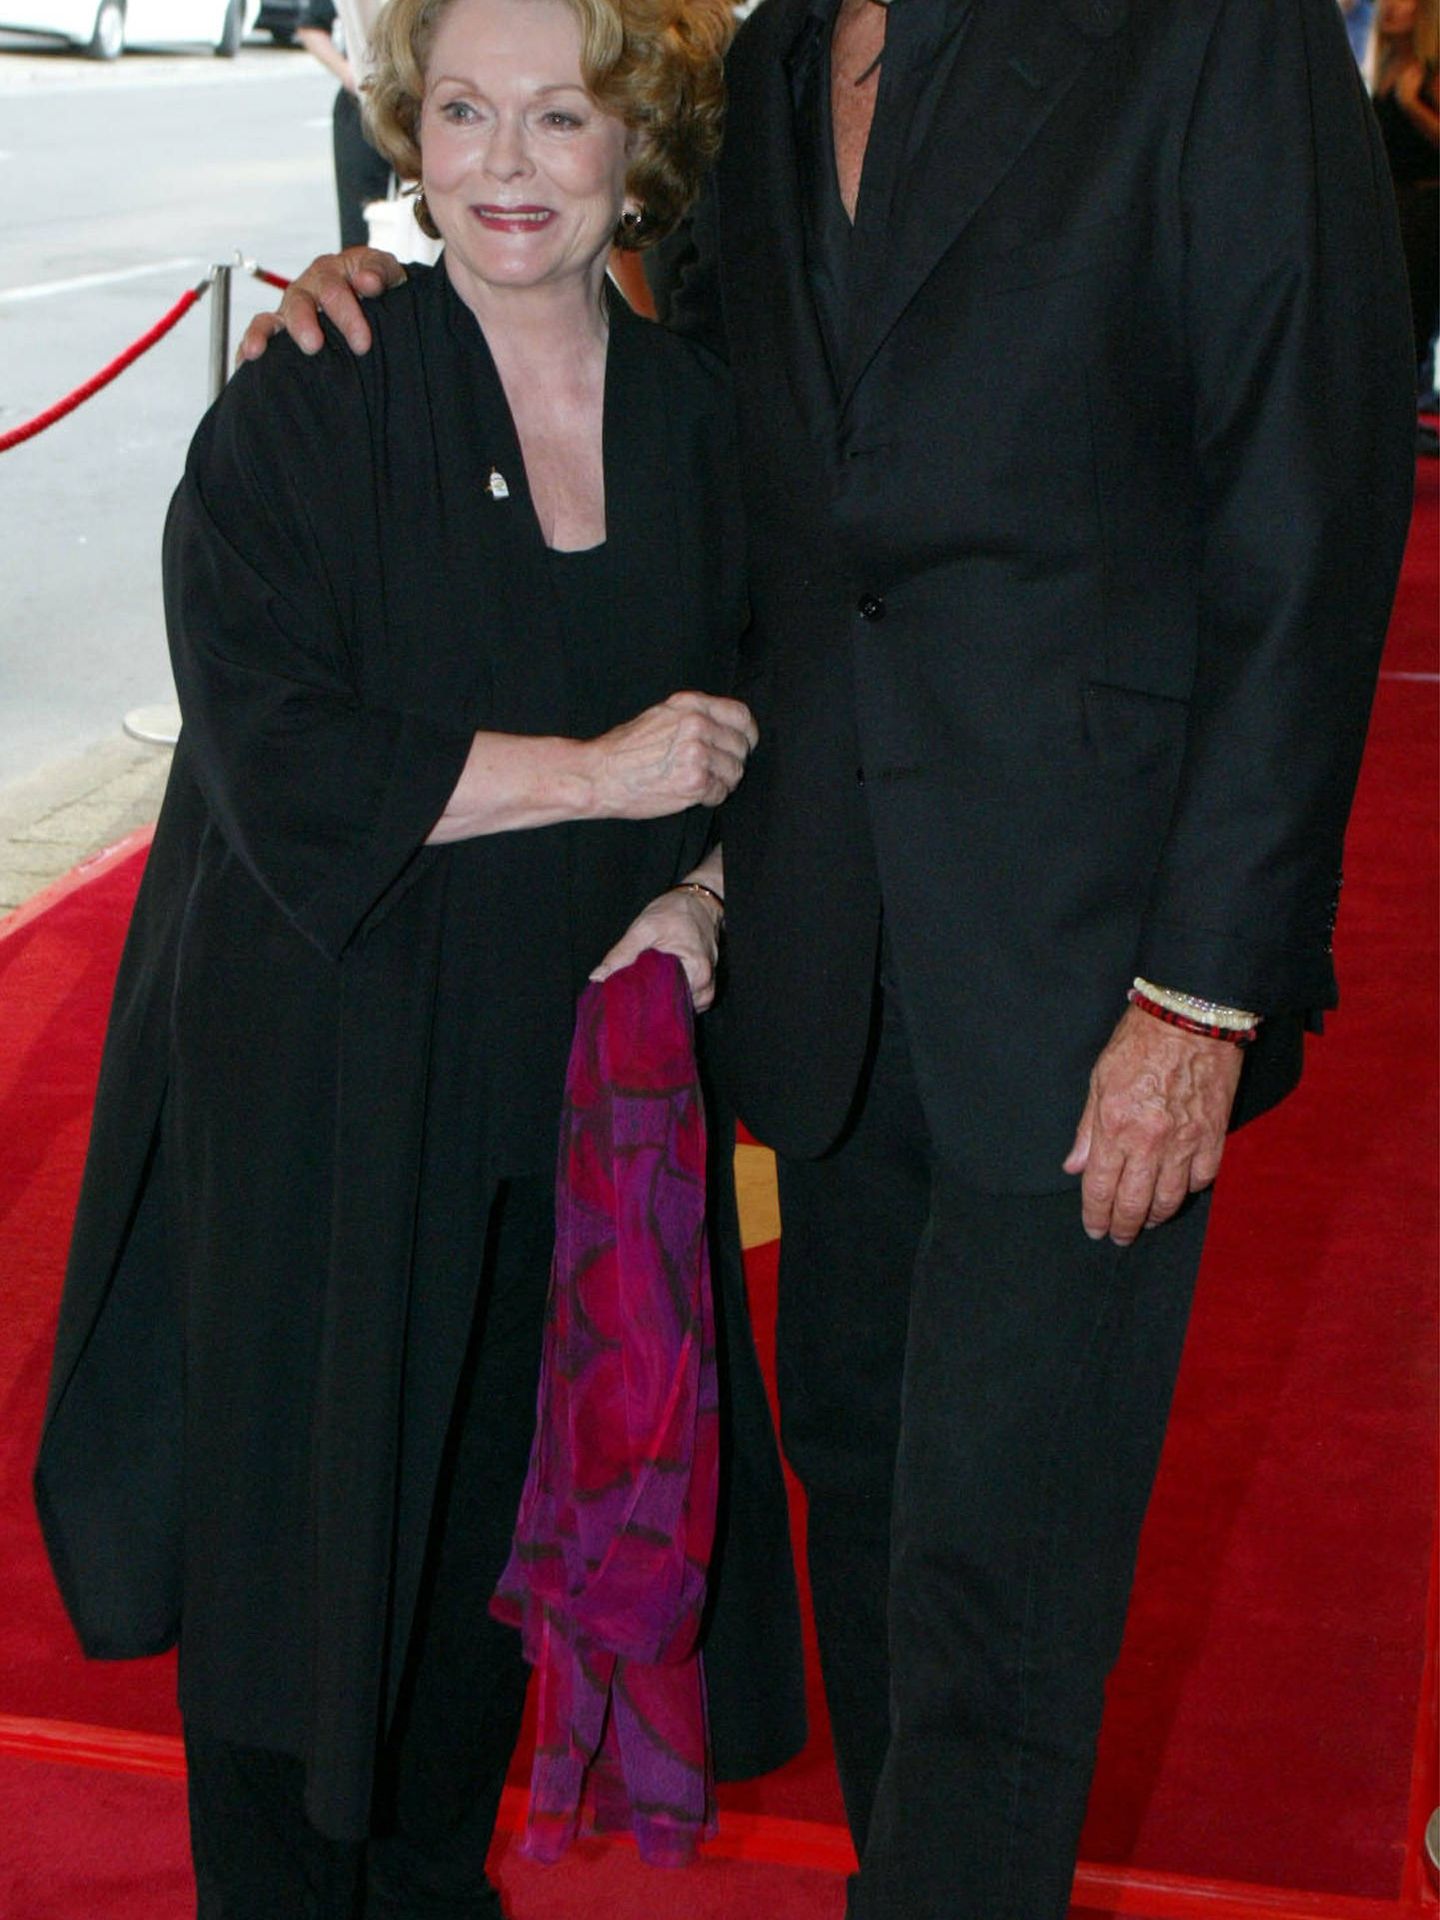  La actriz, junto al director Joel Schumacher en el festival de cine de Toronto. (Getty)